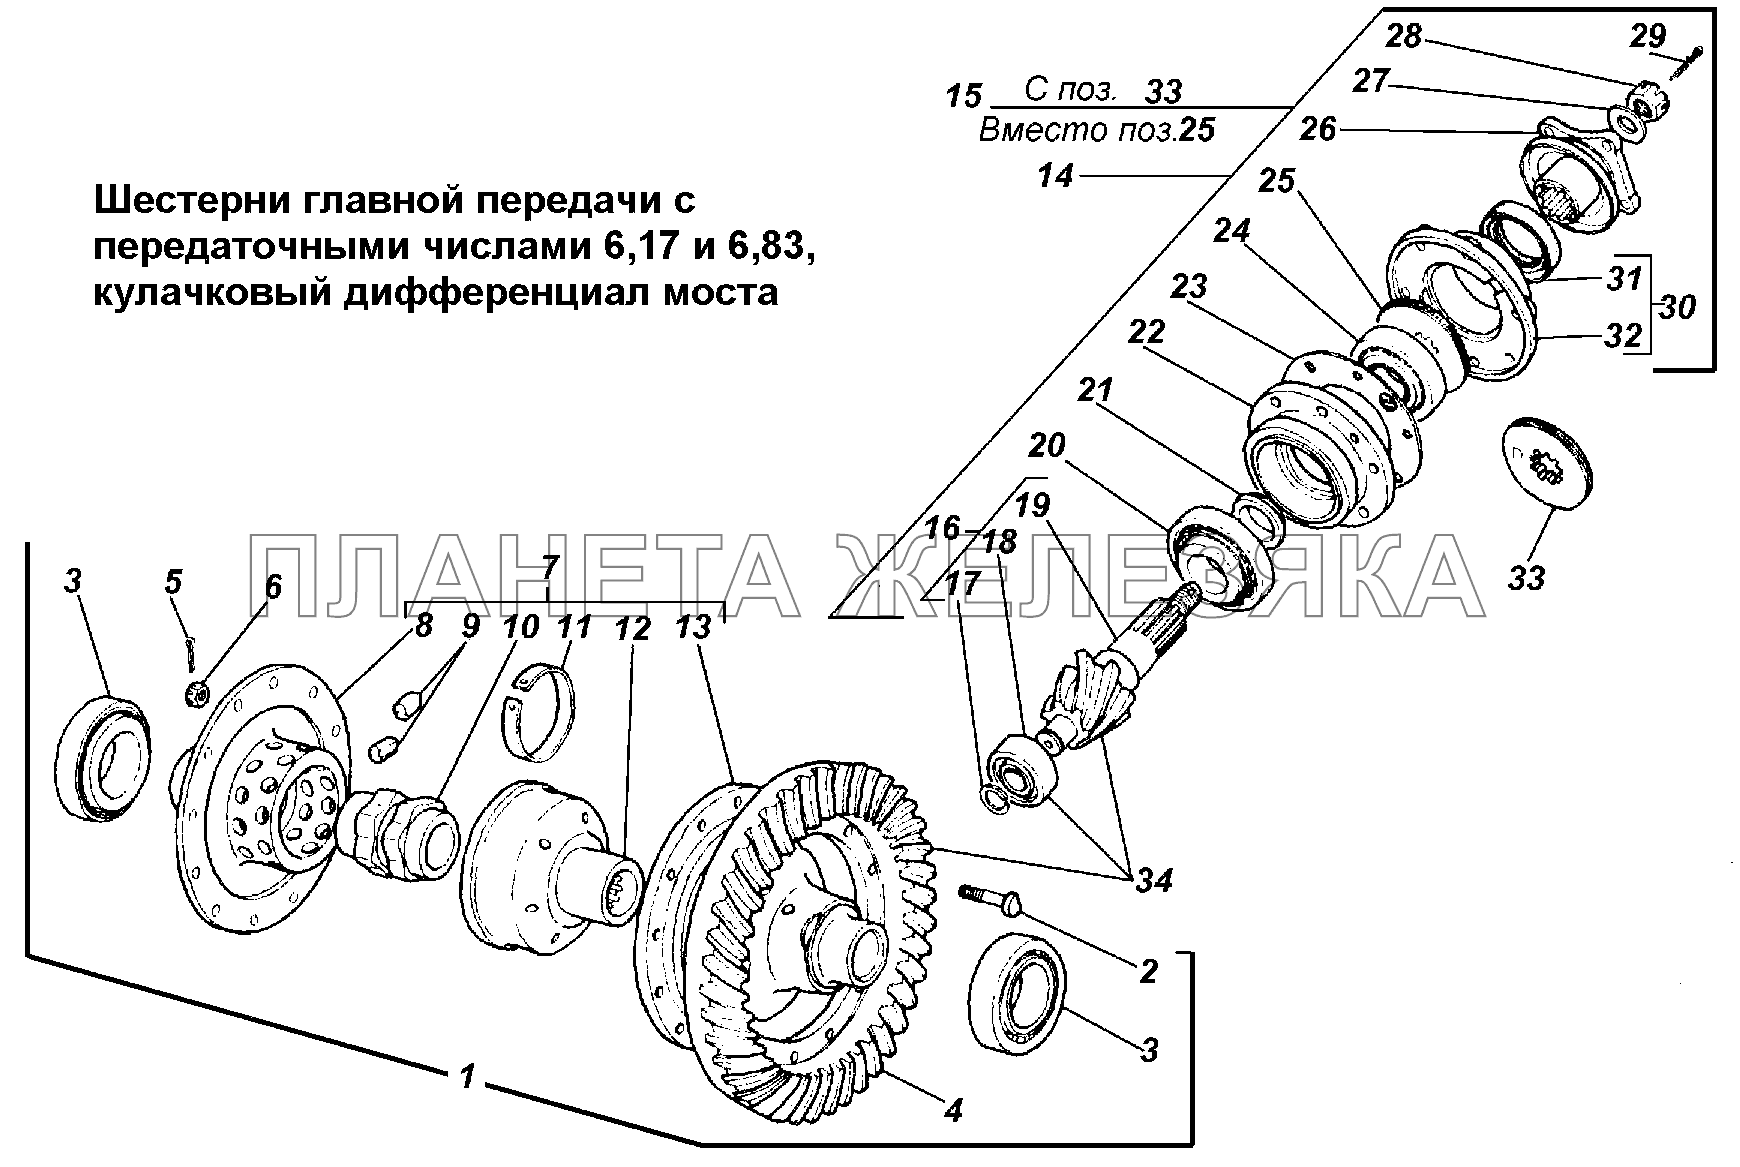 Шестерни главной передачи с передаточными числами 6,17 и 6,83, кулачковый дифференциал моста ГАЗ-3308